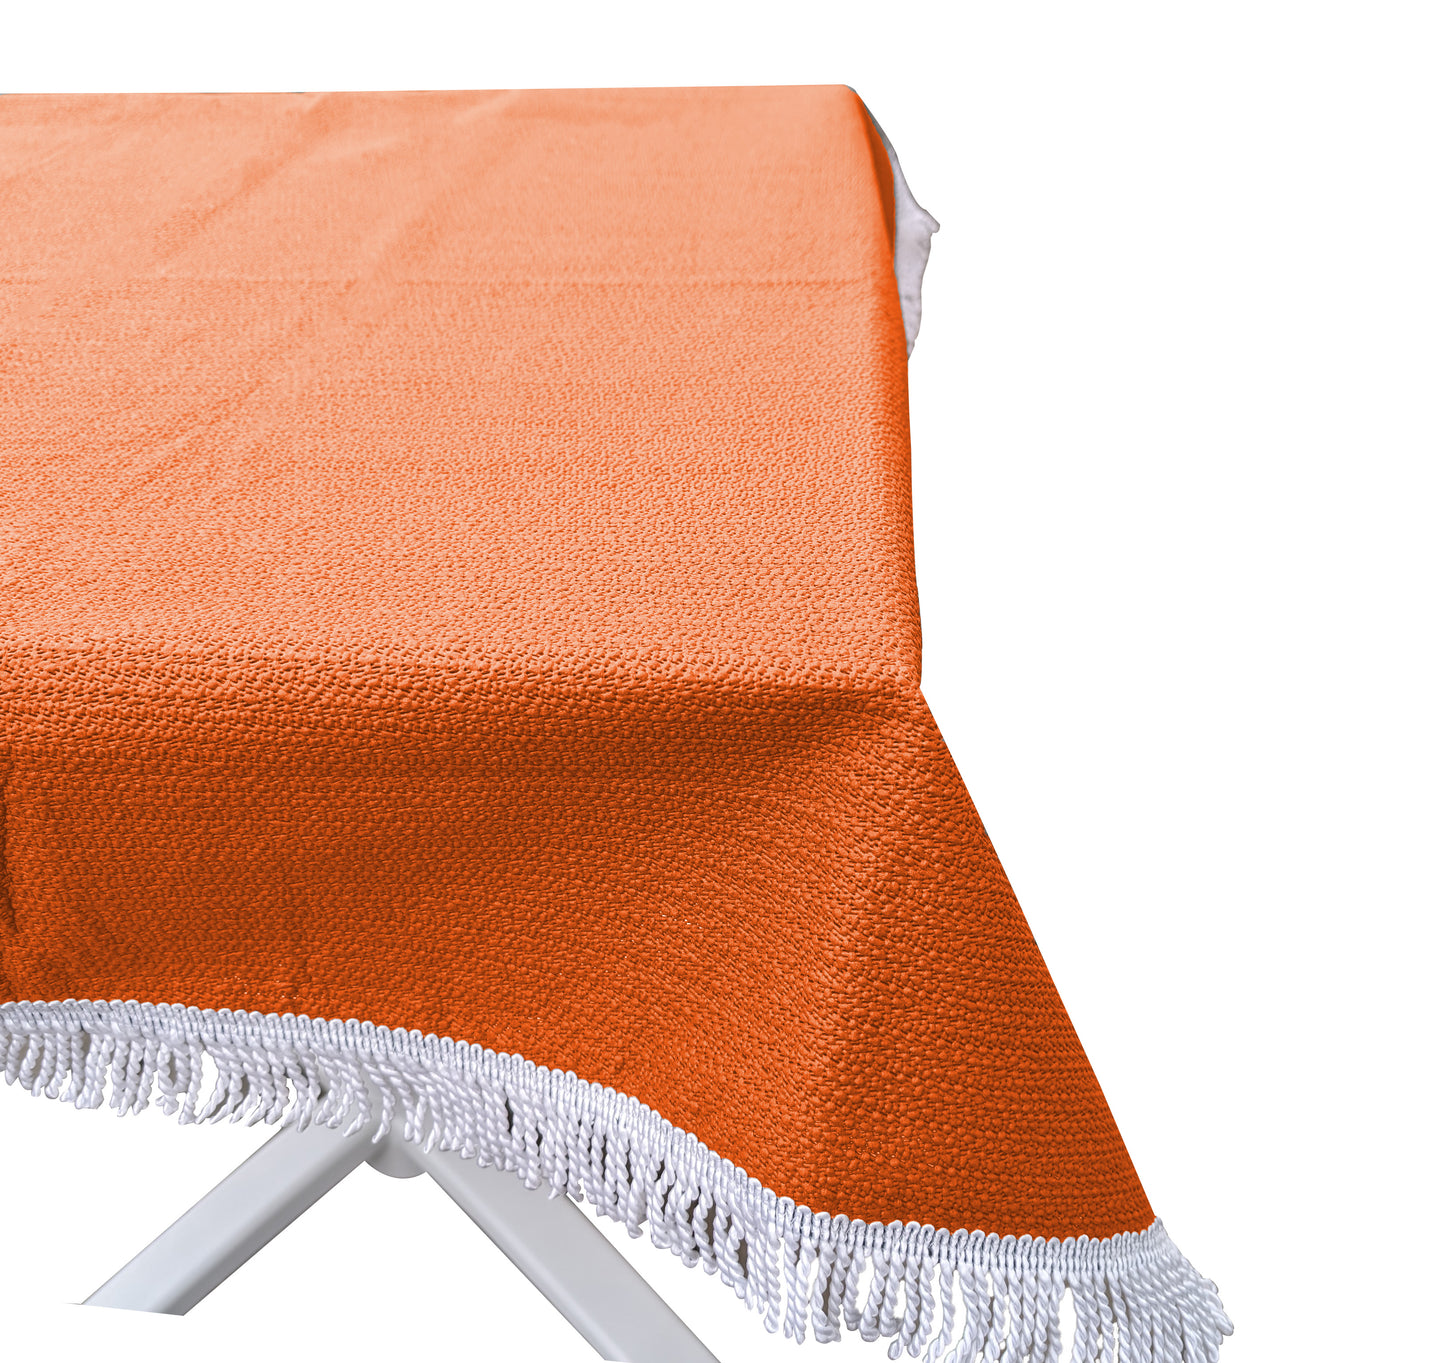 Gartentischdecke 130cm Rund Orange  Weichschaum Witterungsbeständig  Wetterfest geschäumt  Pflegeleicht  abwaschbar